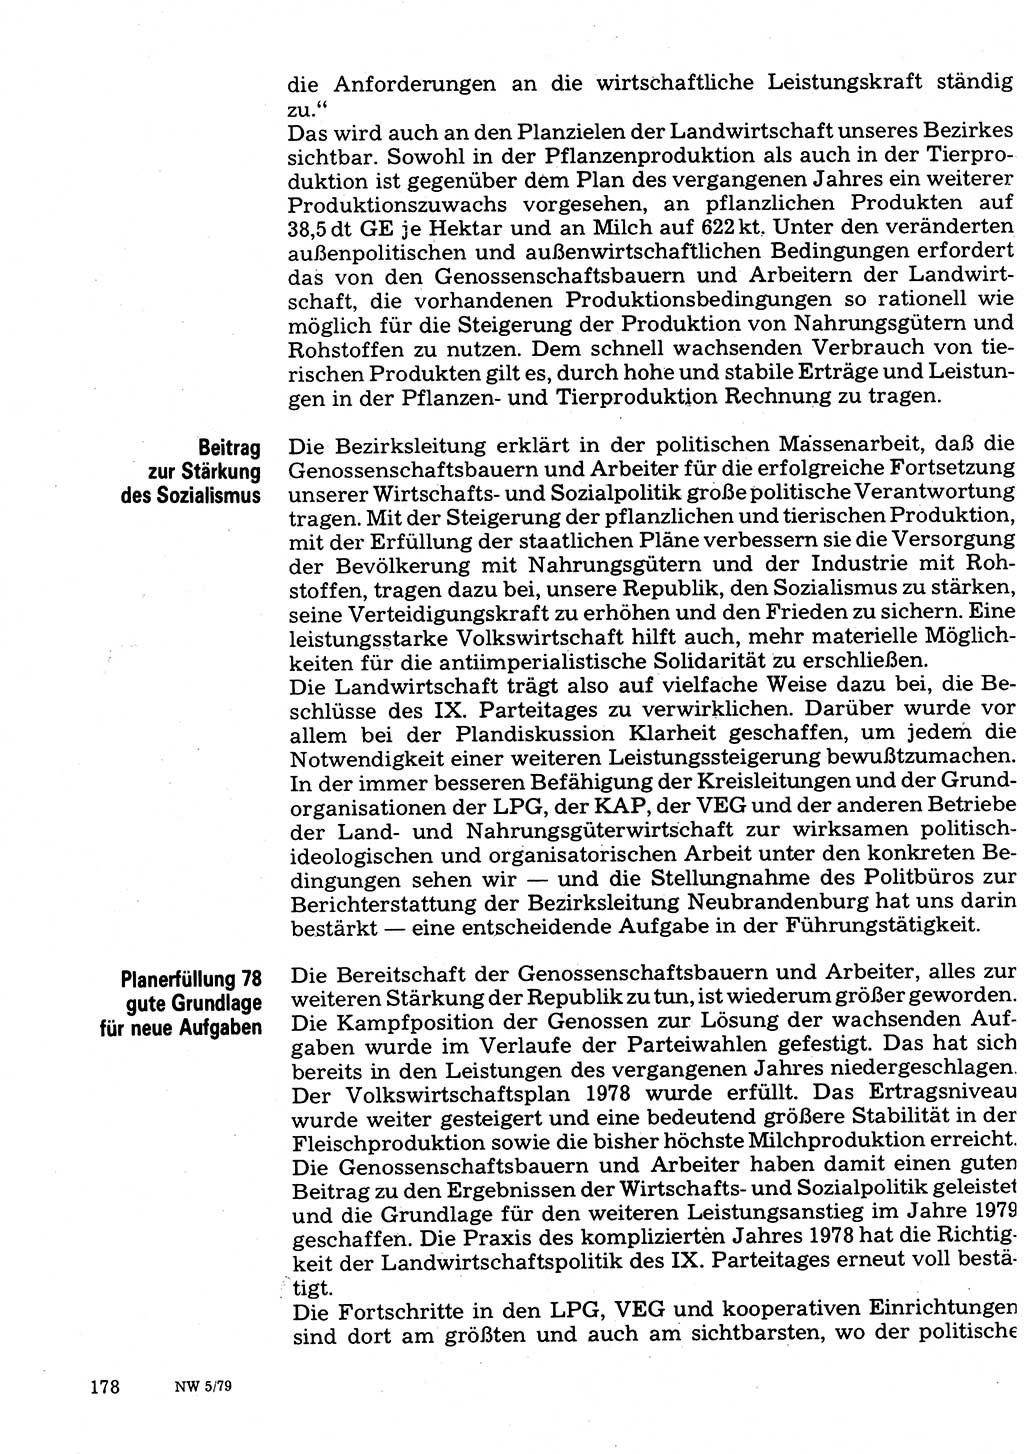 Neuer Weg (NW), Organ des Zentralkomitees (ZK) der SED (Sozialistische Einheitspartei Deutschlands) für Fragen des Parteilebens, 34. Jahrgang [Deutsche Demokratische Republik (DDR)] 1979, Seite 178 (NW ZK SED DDR 1979, S. 178)